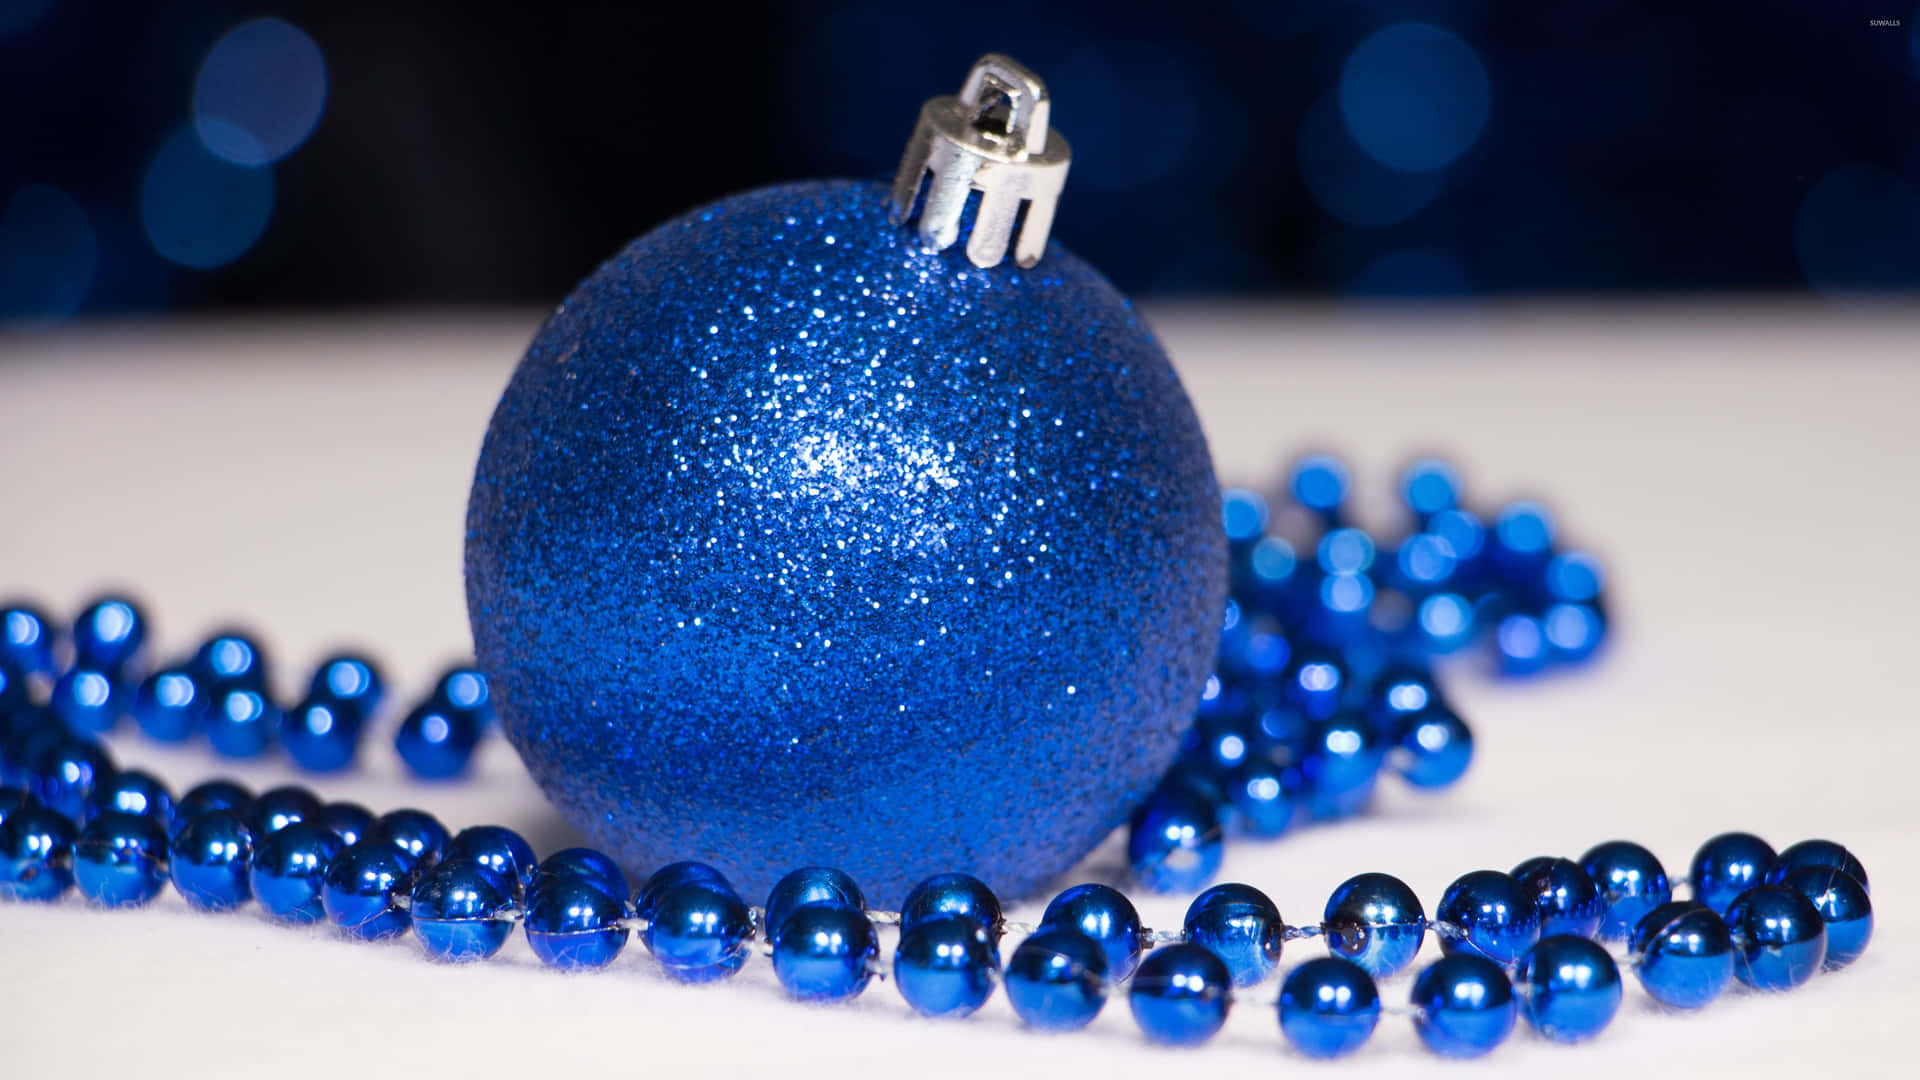 Blaueweihnachtskugeln Mit Perlen Auf Einem Tisch Wallpaper